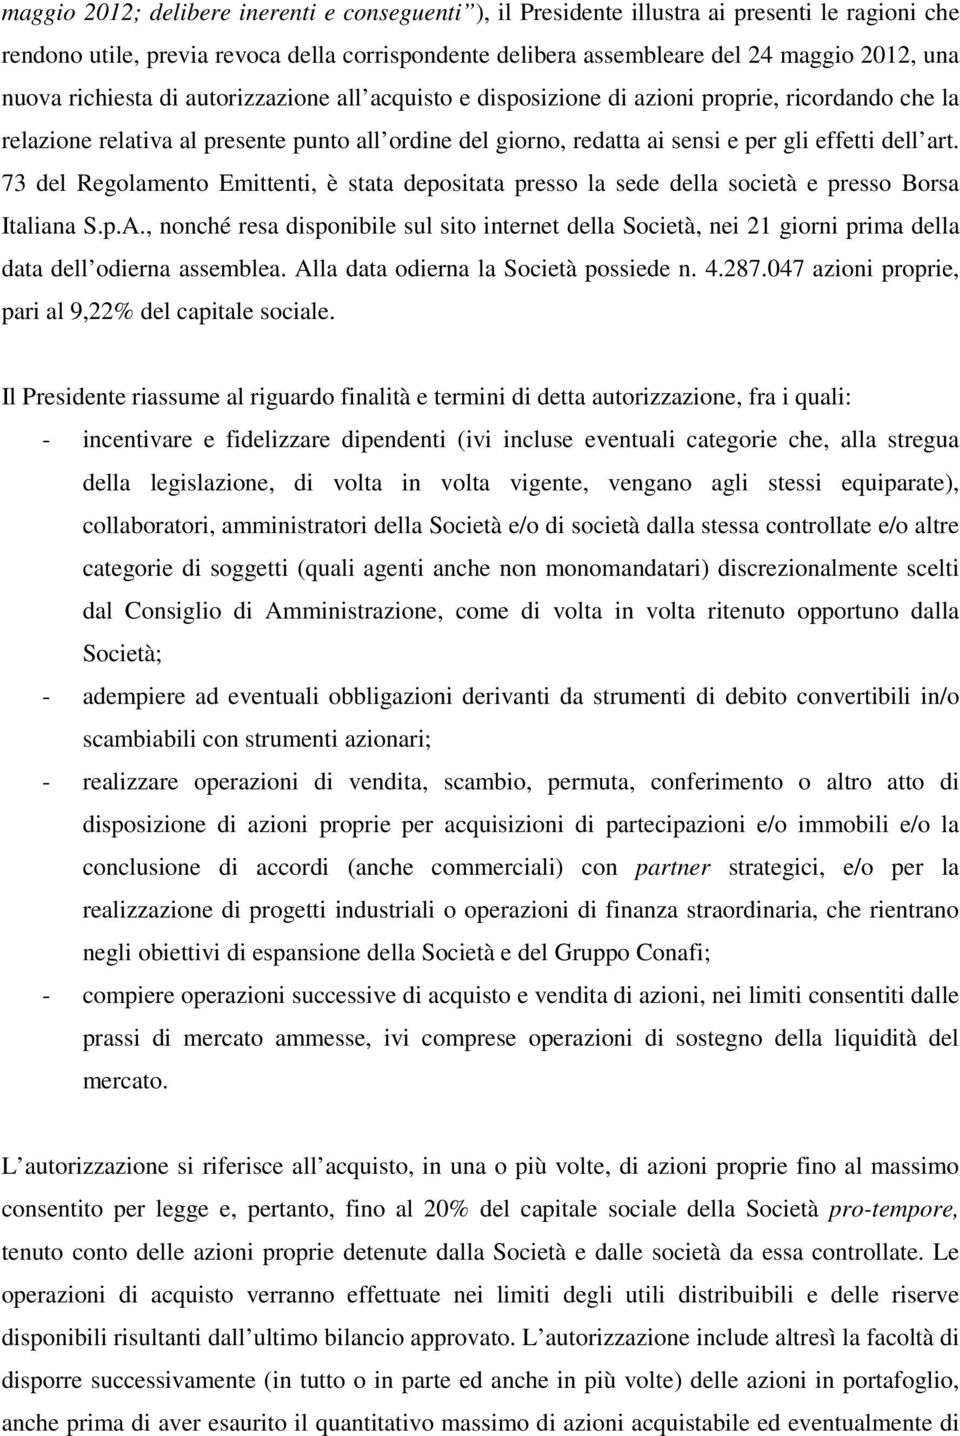 73 del Regolamento Emittenti, è stata depositata presso la sede della società e presso Borsa Italiana S.p.A.